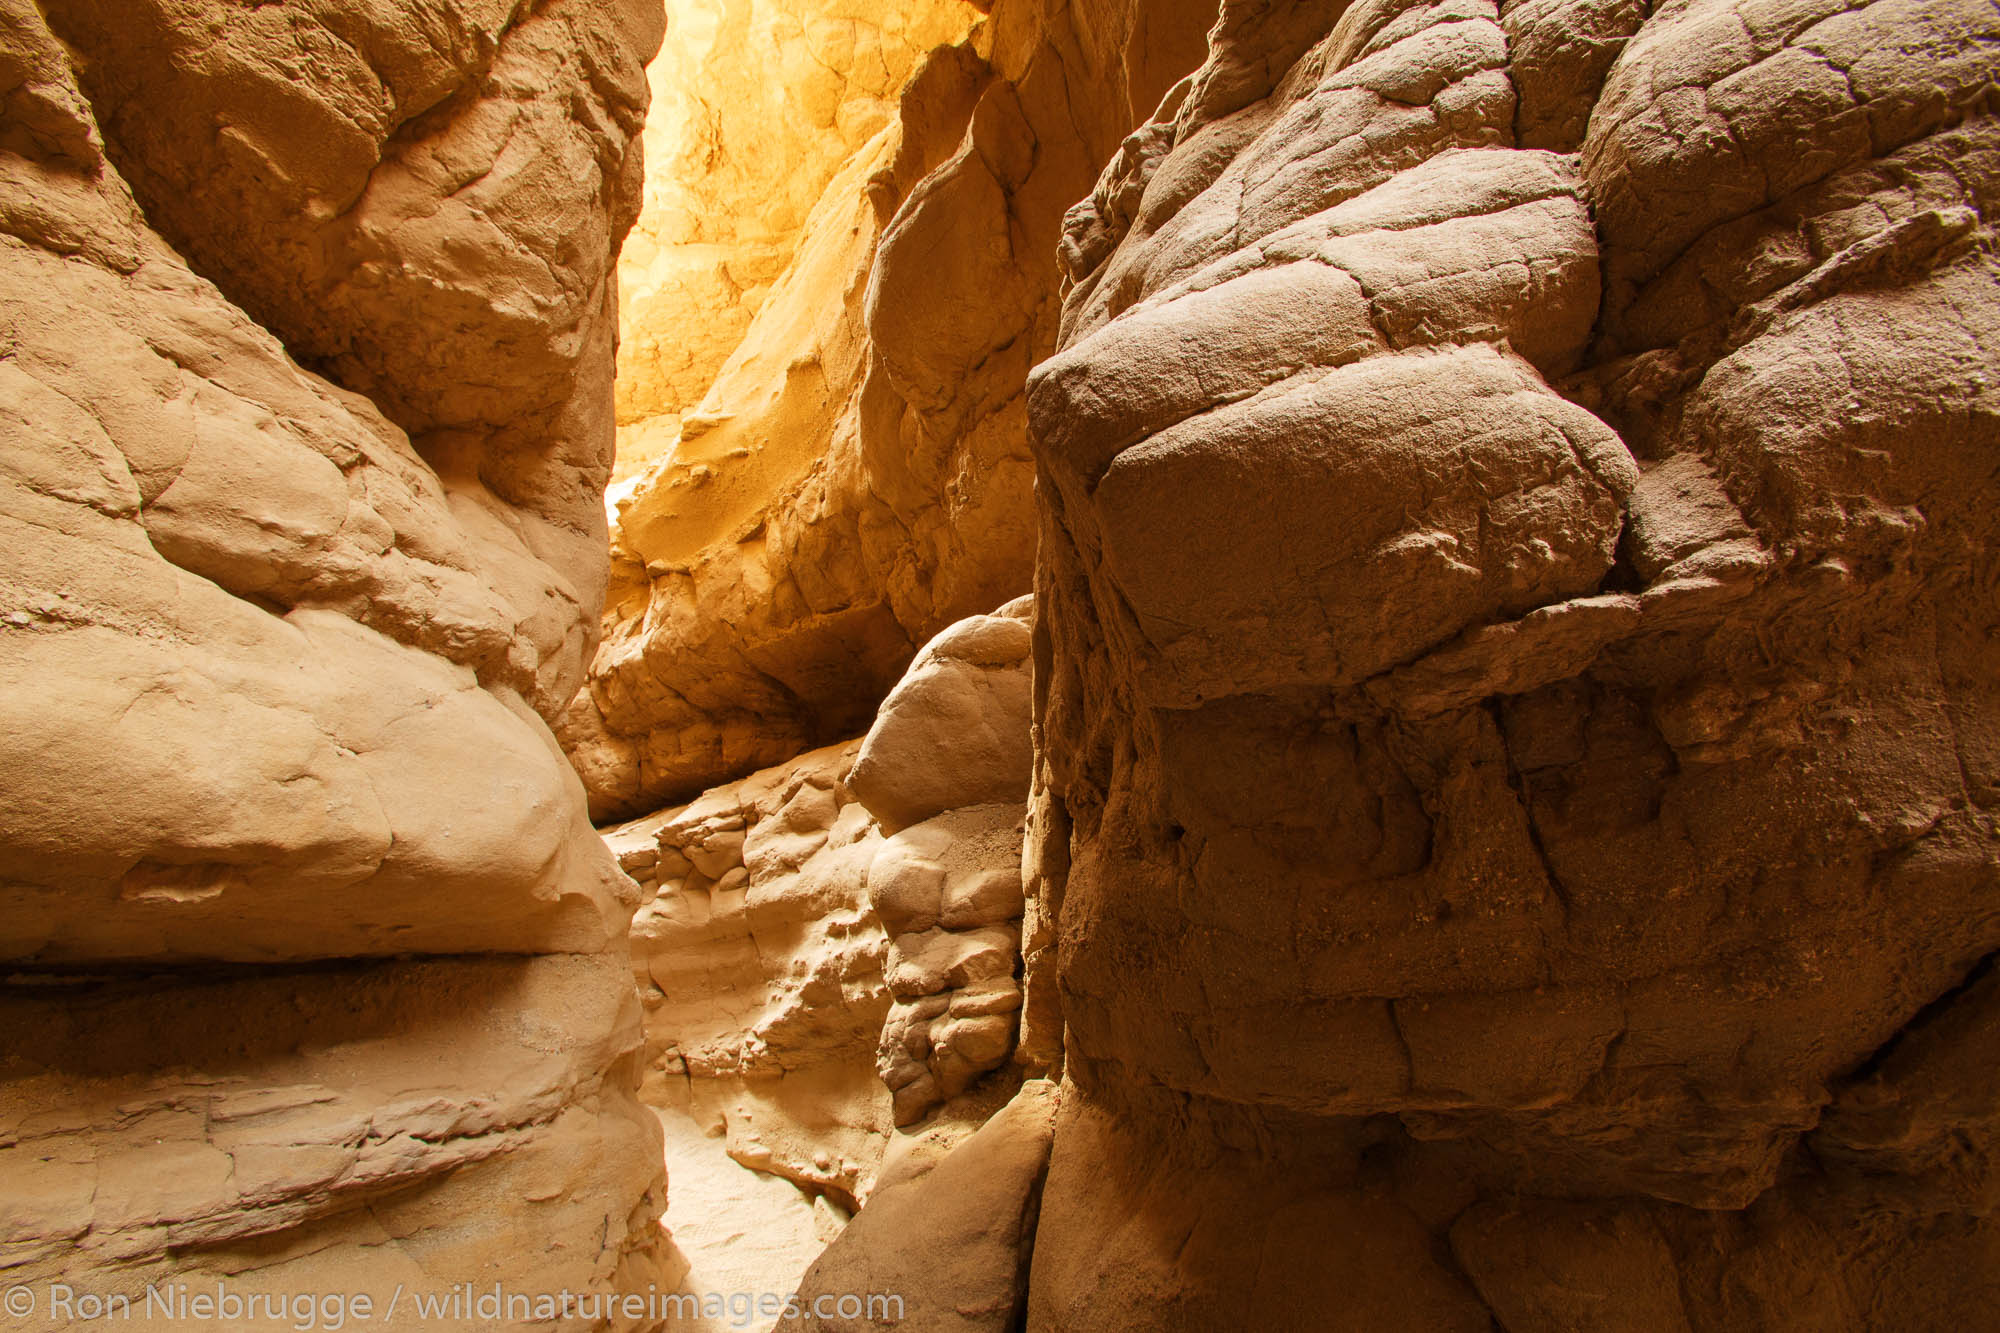 A slot canyon in Anza-Borrego Desert State Park, California.